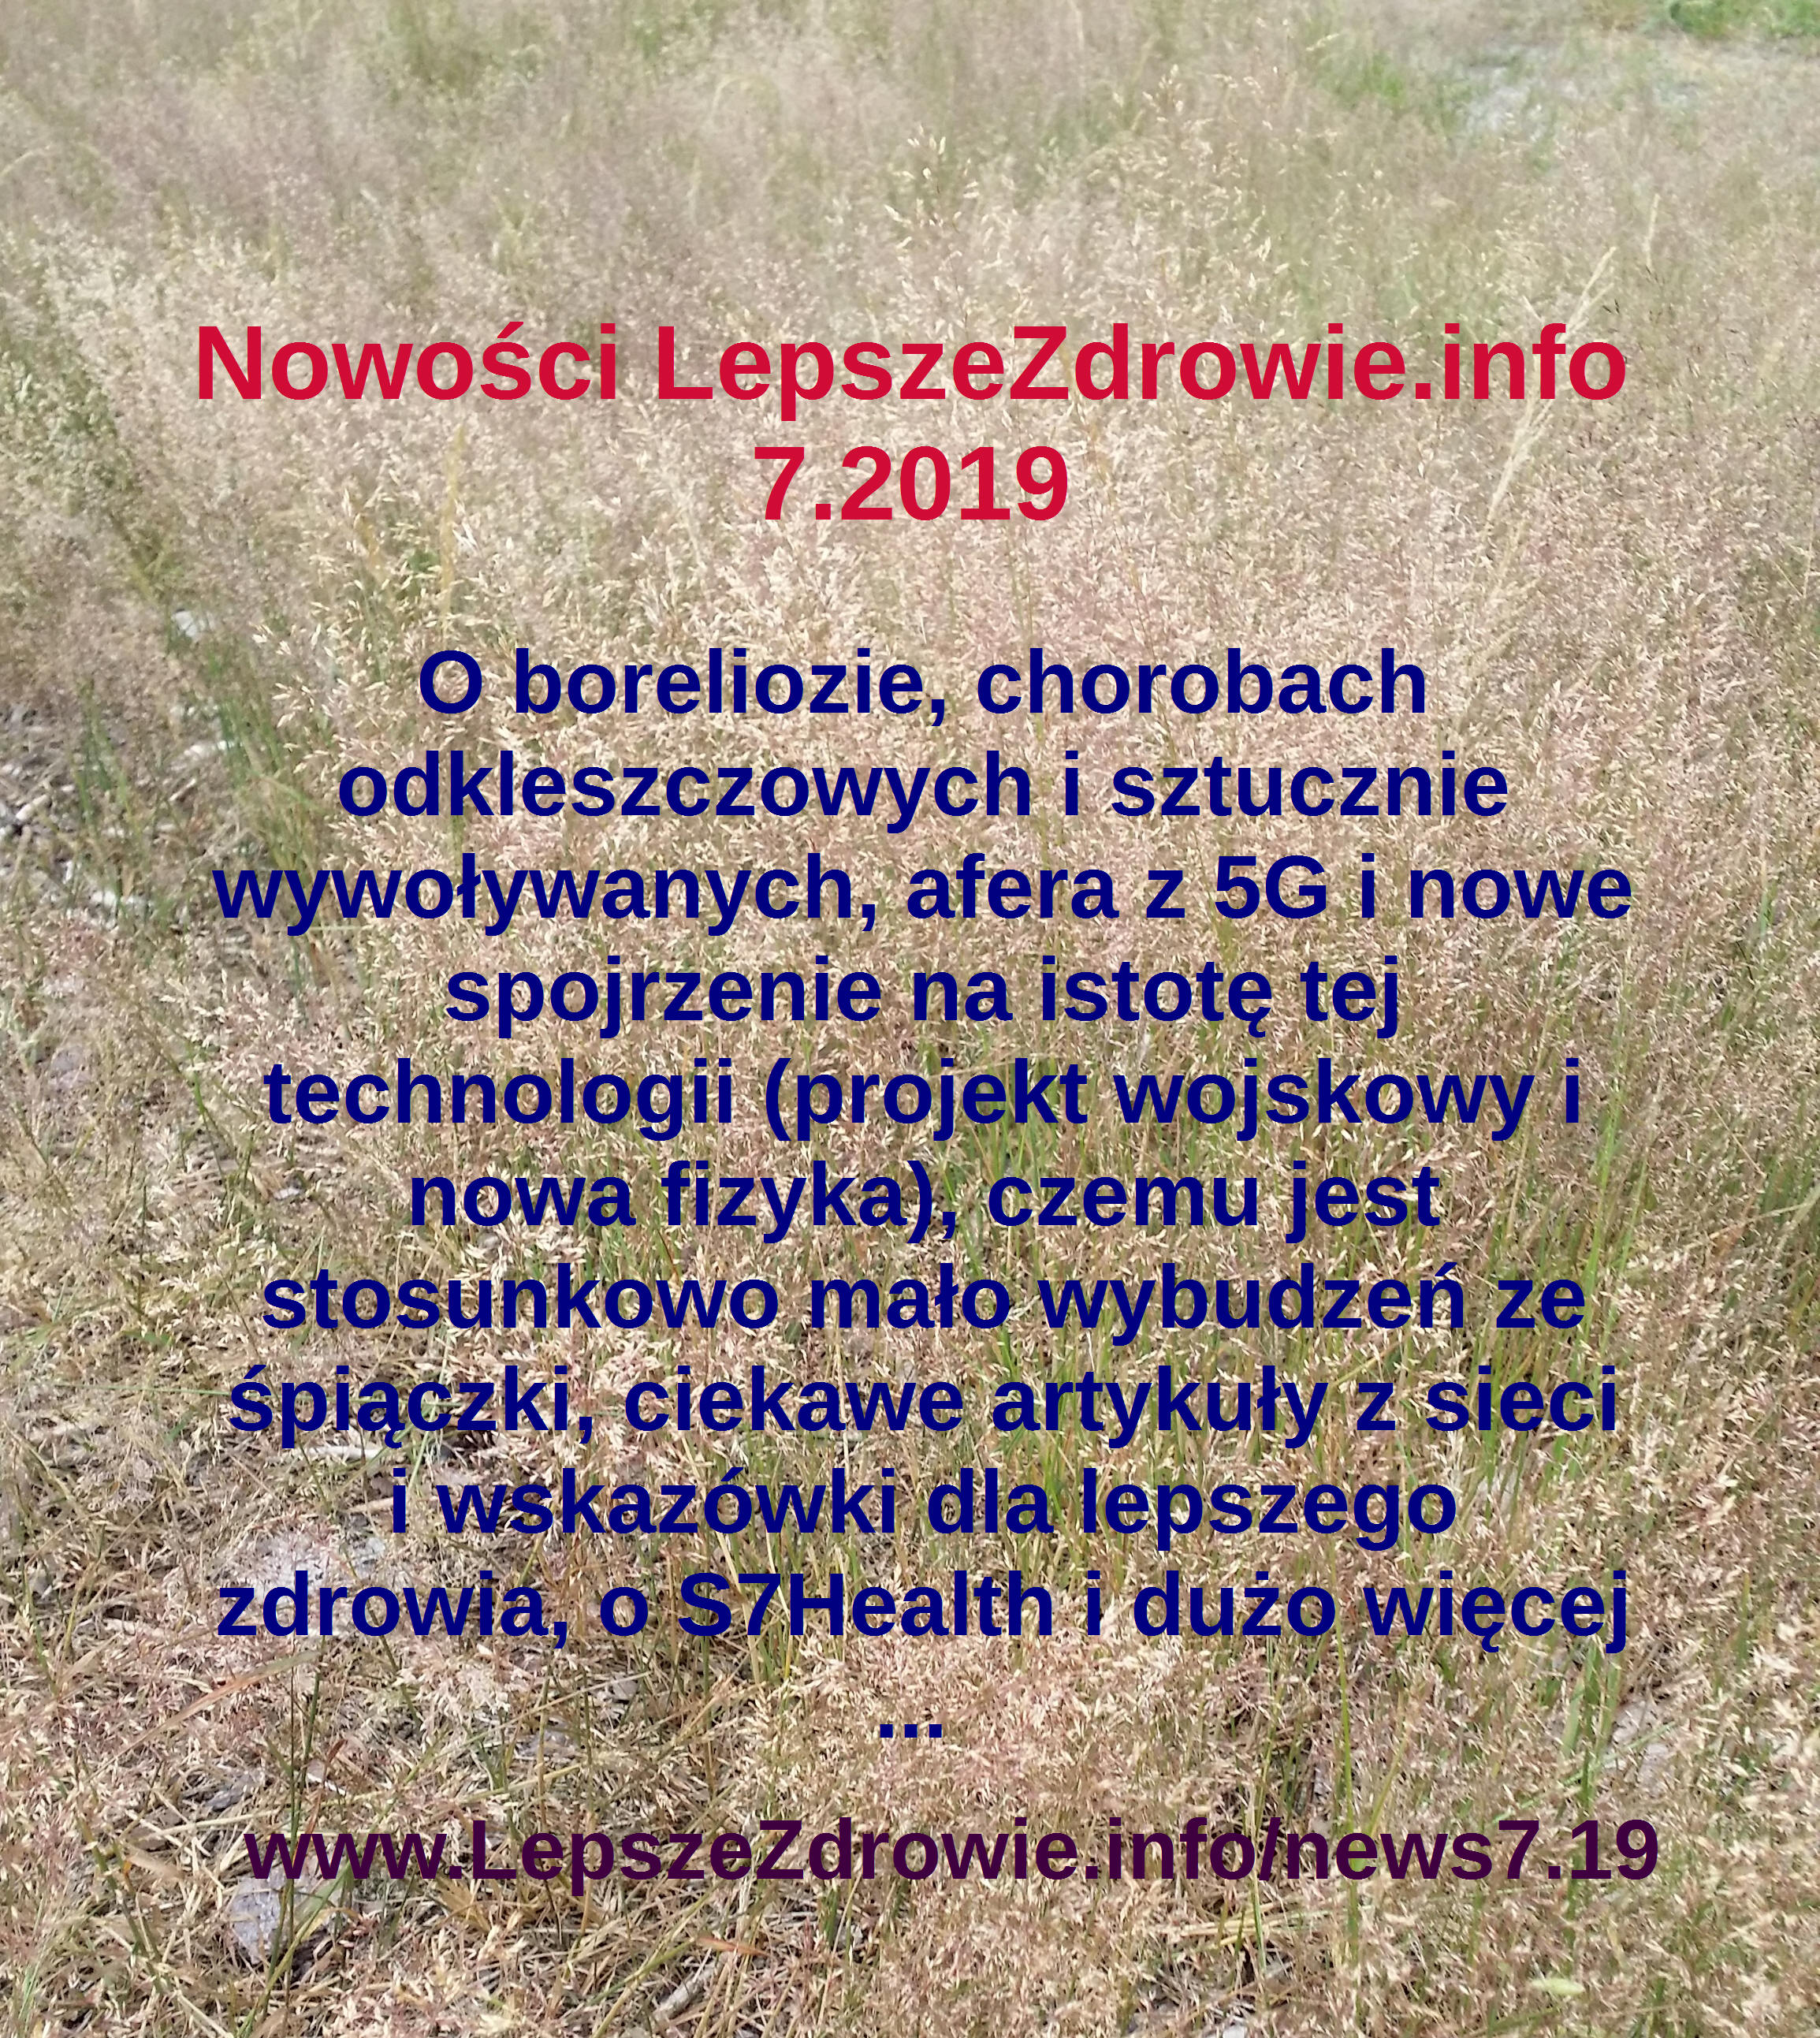 LepszeZdrowie news 7.2019